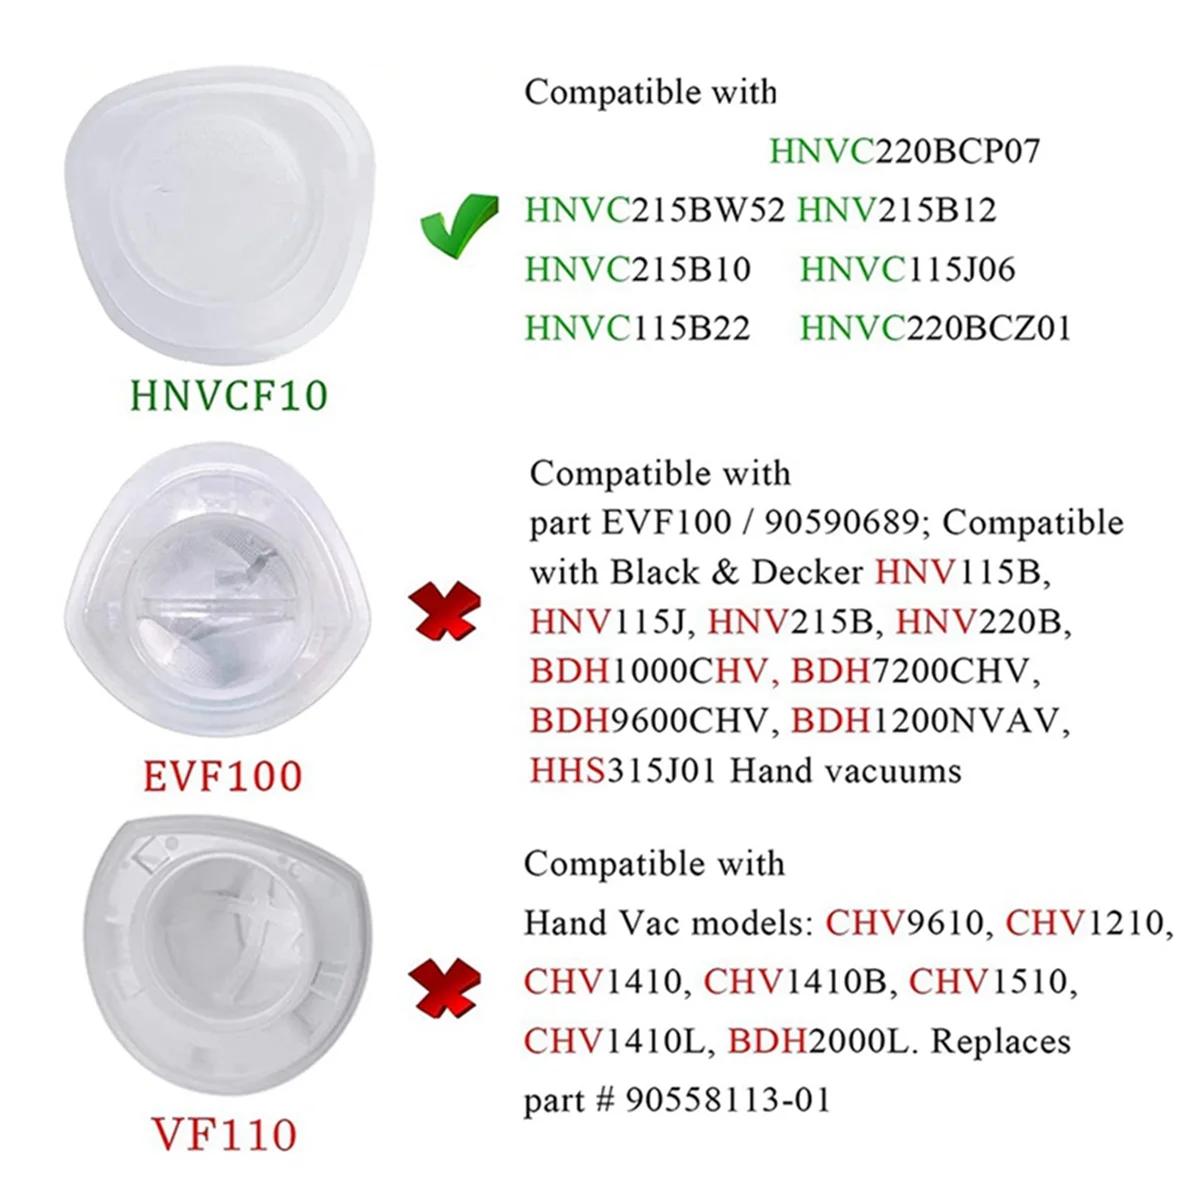 Фильтр HNVCF10, совместимый с ручными пылесосами Black and Decker Dustbuster, Фильтр HNVC215B10, фильтр HNVC215B12, фильтр HNVC215BW52 (6 упаковок) - 5